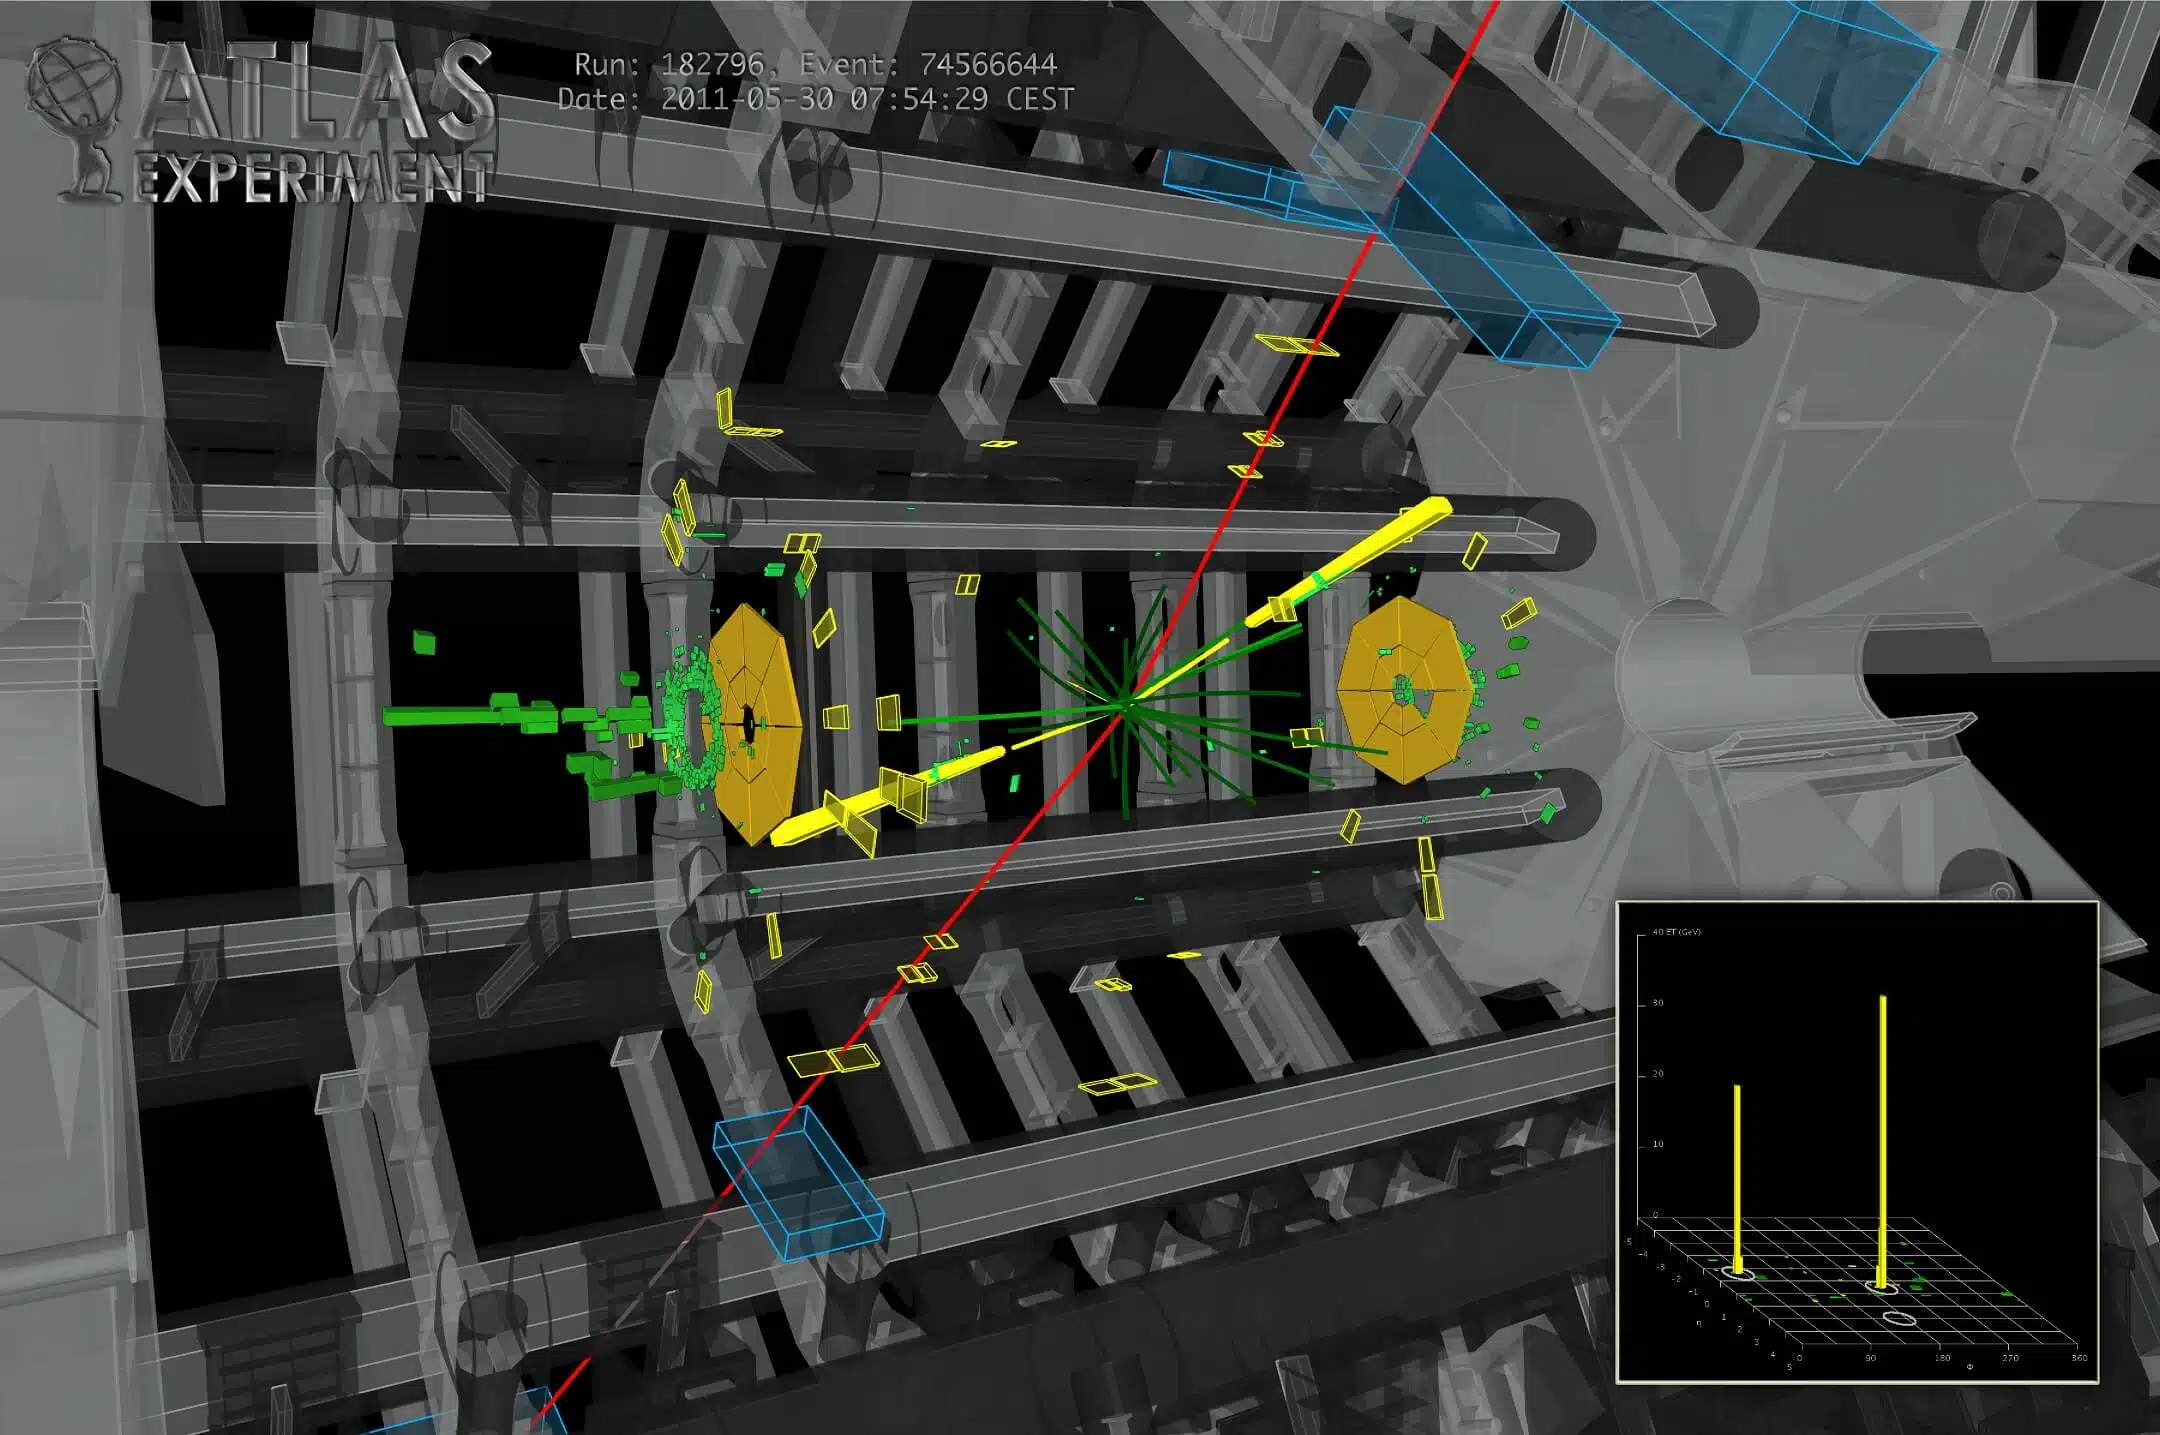 תוצר התנגשות בניסוי האטלס שעשוי להיות חלקיק היגס. איור: ניסוי אטלס ב-CERN; דצמבר 2012